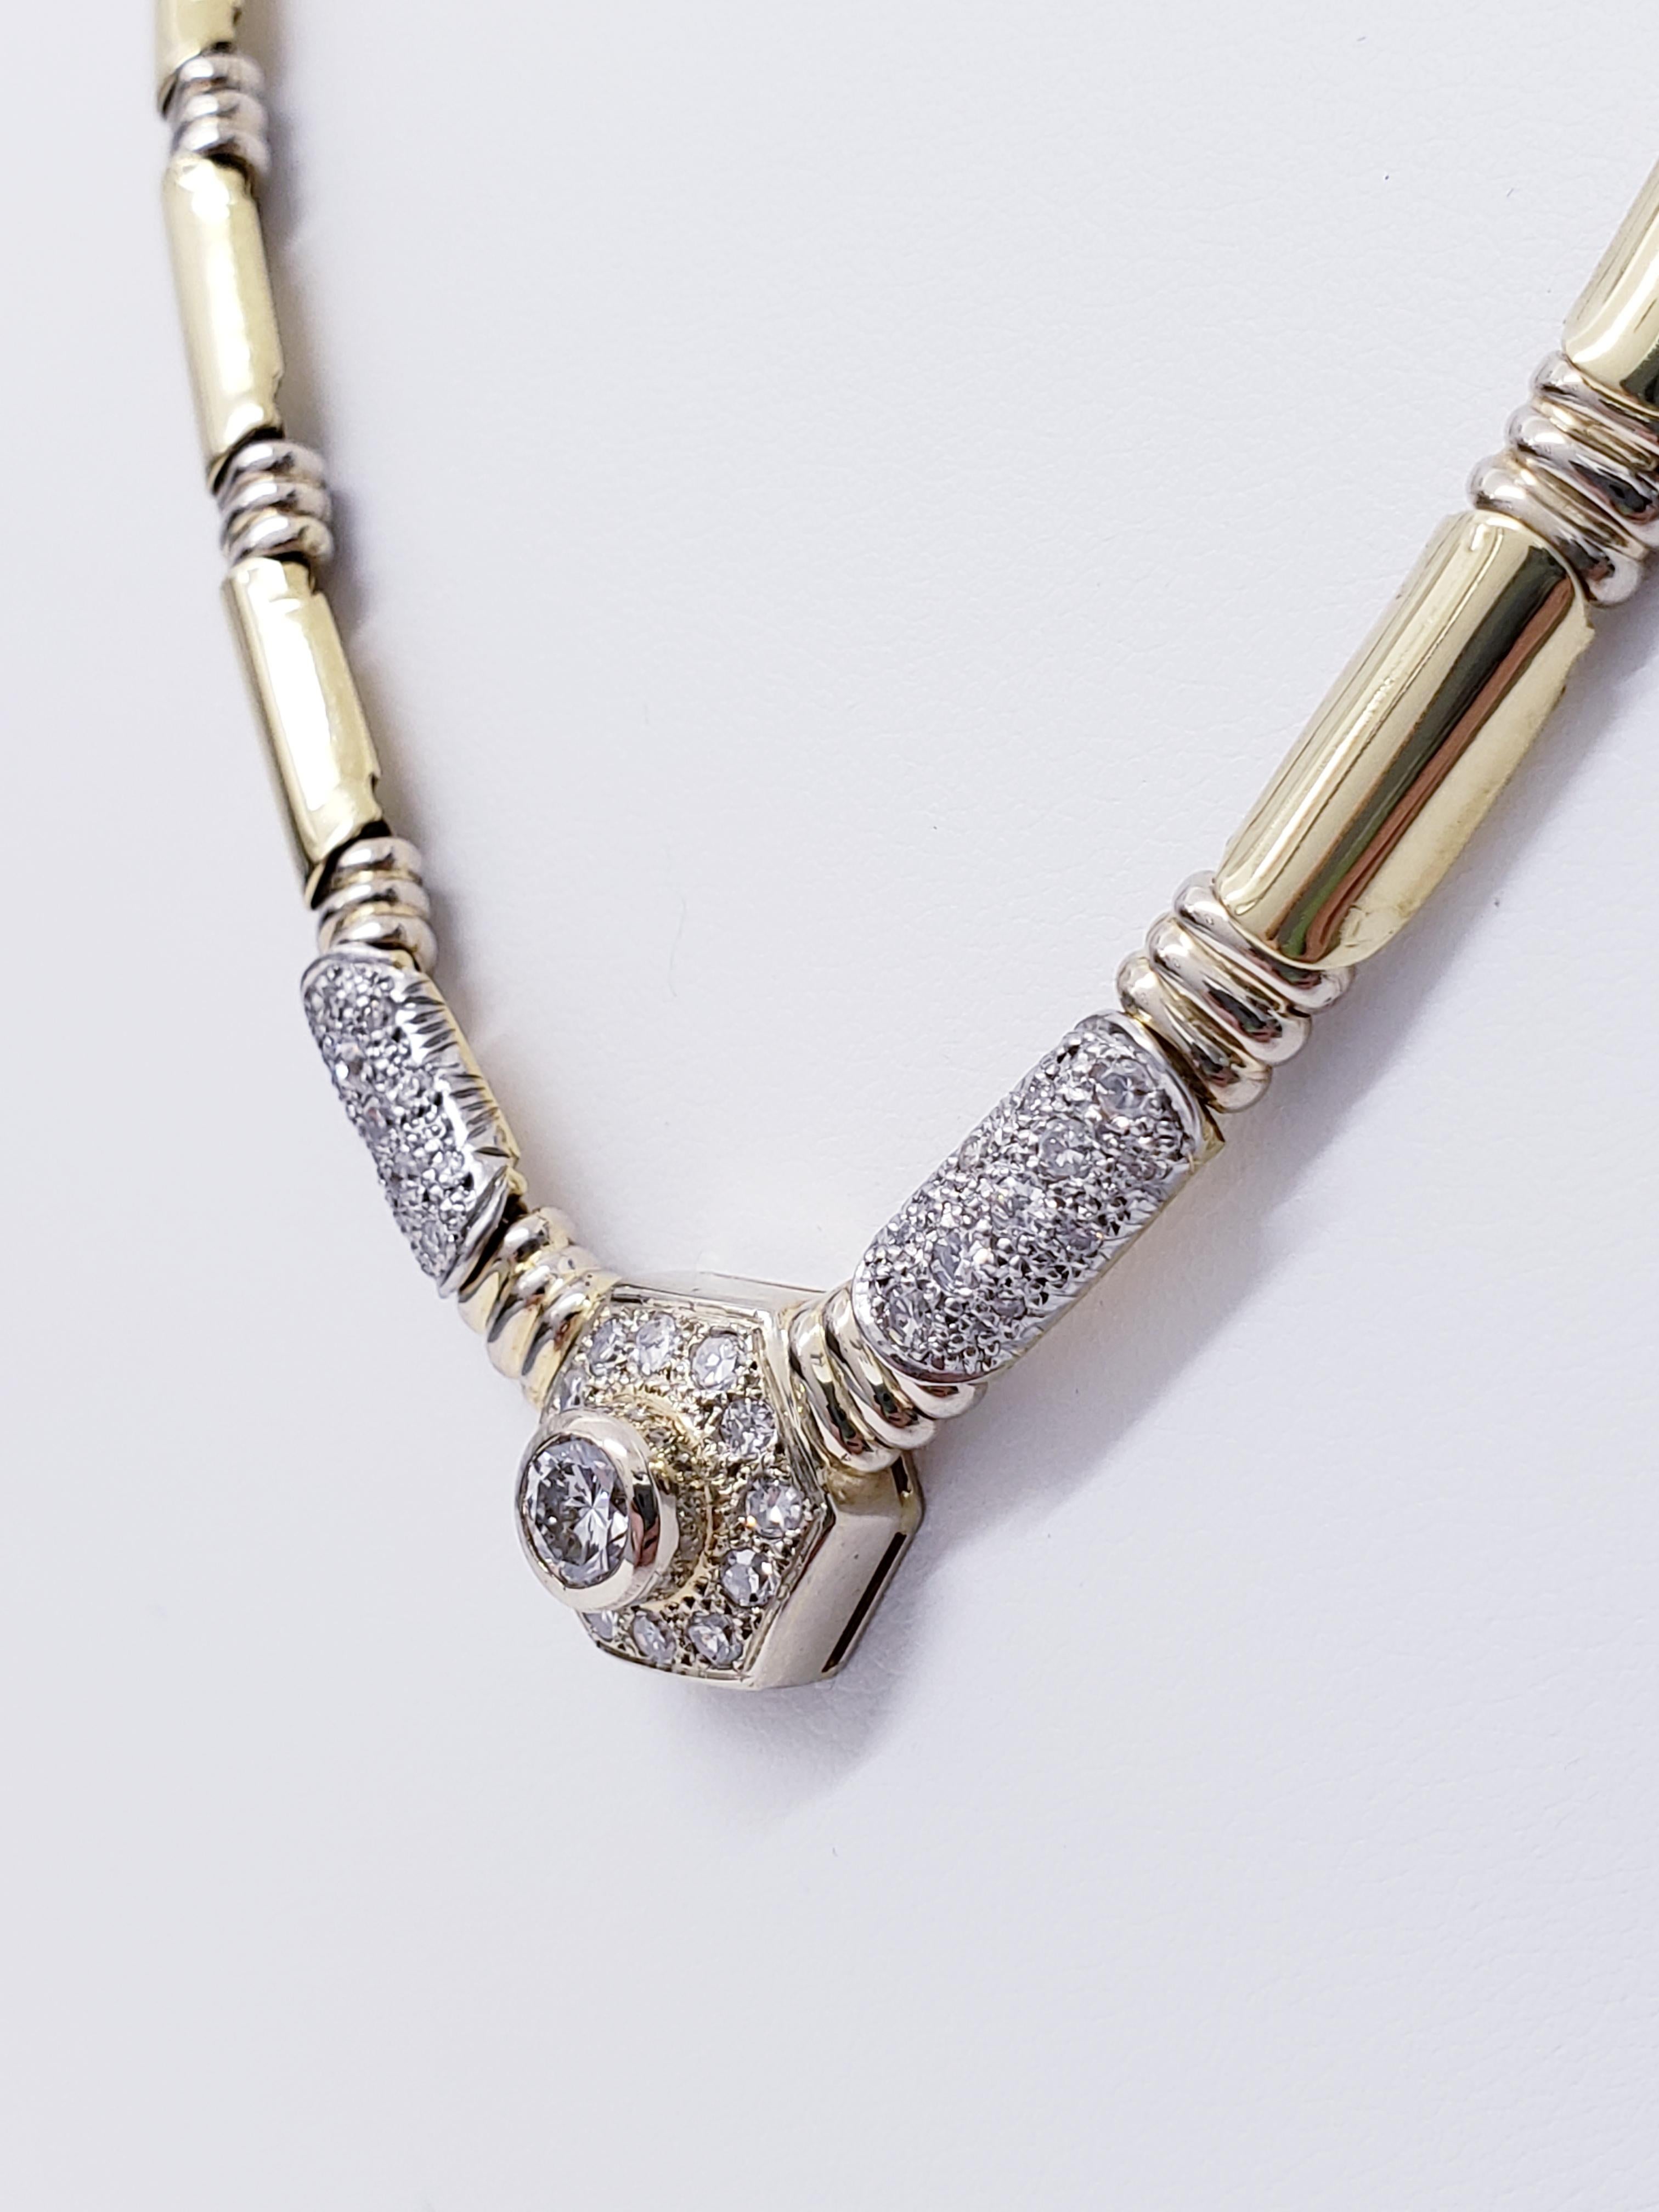 Vintage 4.00tcw Diamant-Bambus-Halskette
Die Halskette hat ein schönes Bambusdesign mit Gelb- und Weißgold, um mehr Details des Bambus zu zeigen. Der Diamant in der Mitte wiegt ca. 0,50ct und die seitlichen Diamanten insgesamt ca. 3,50ct. Die